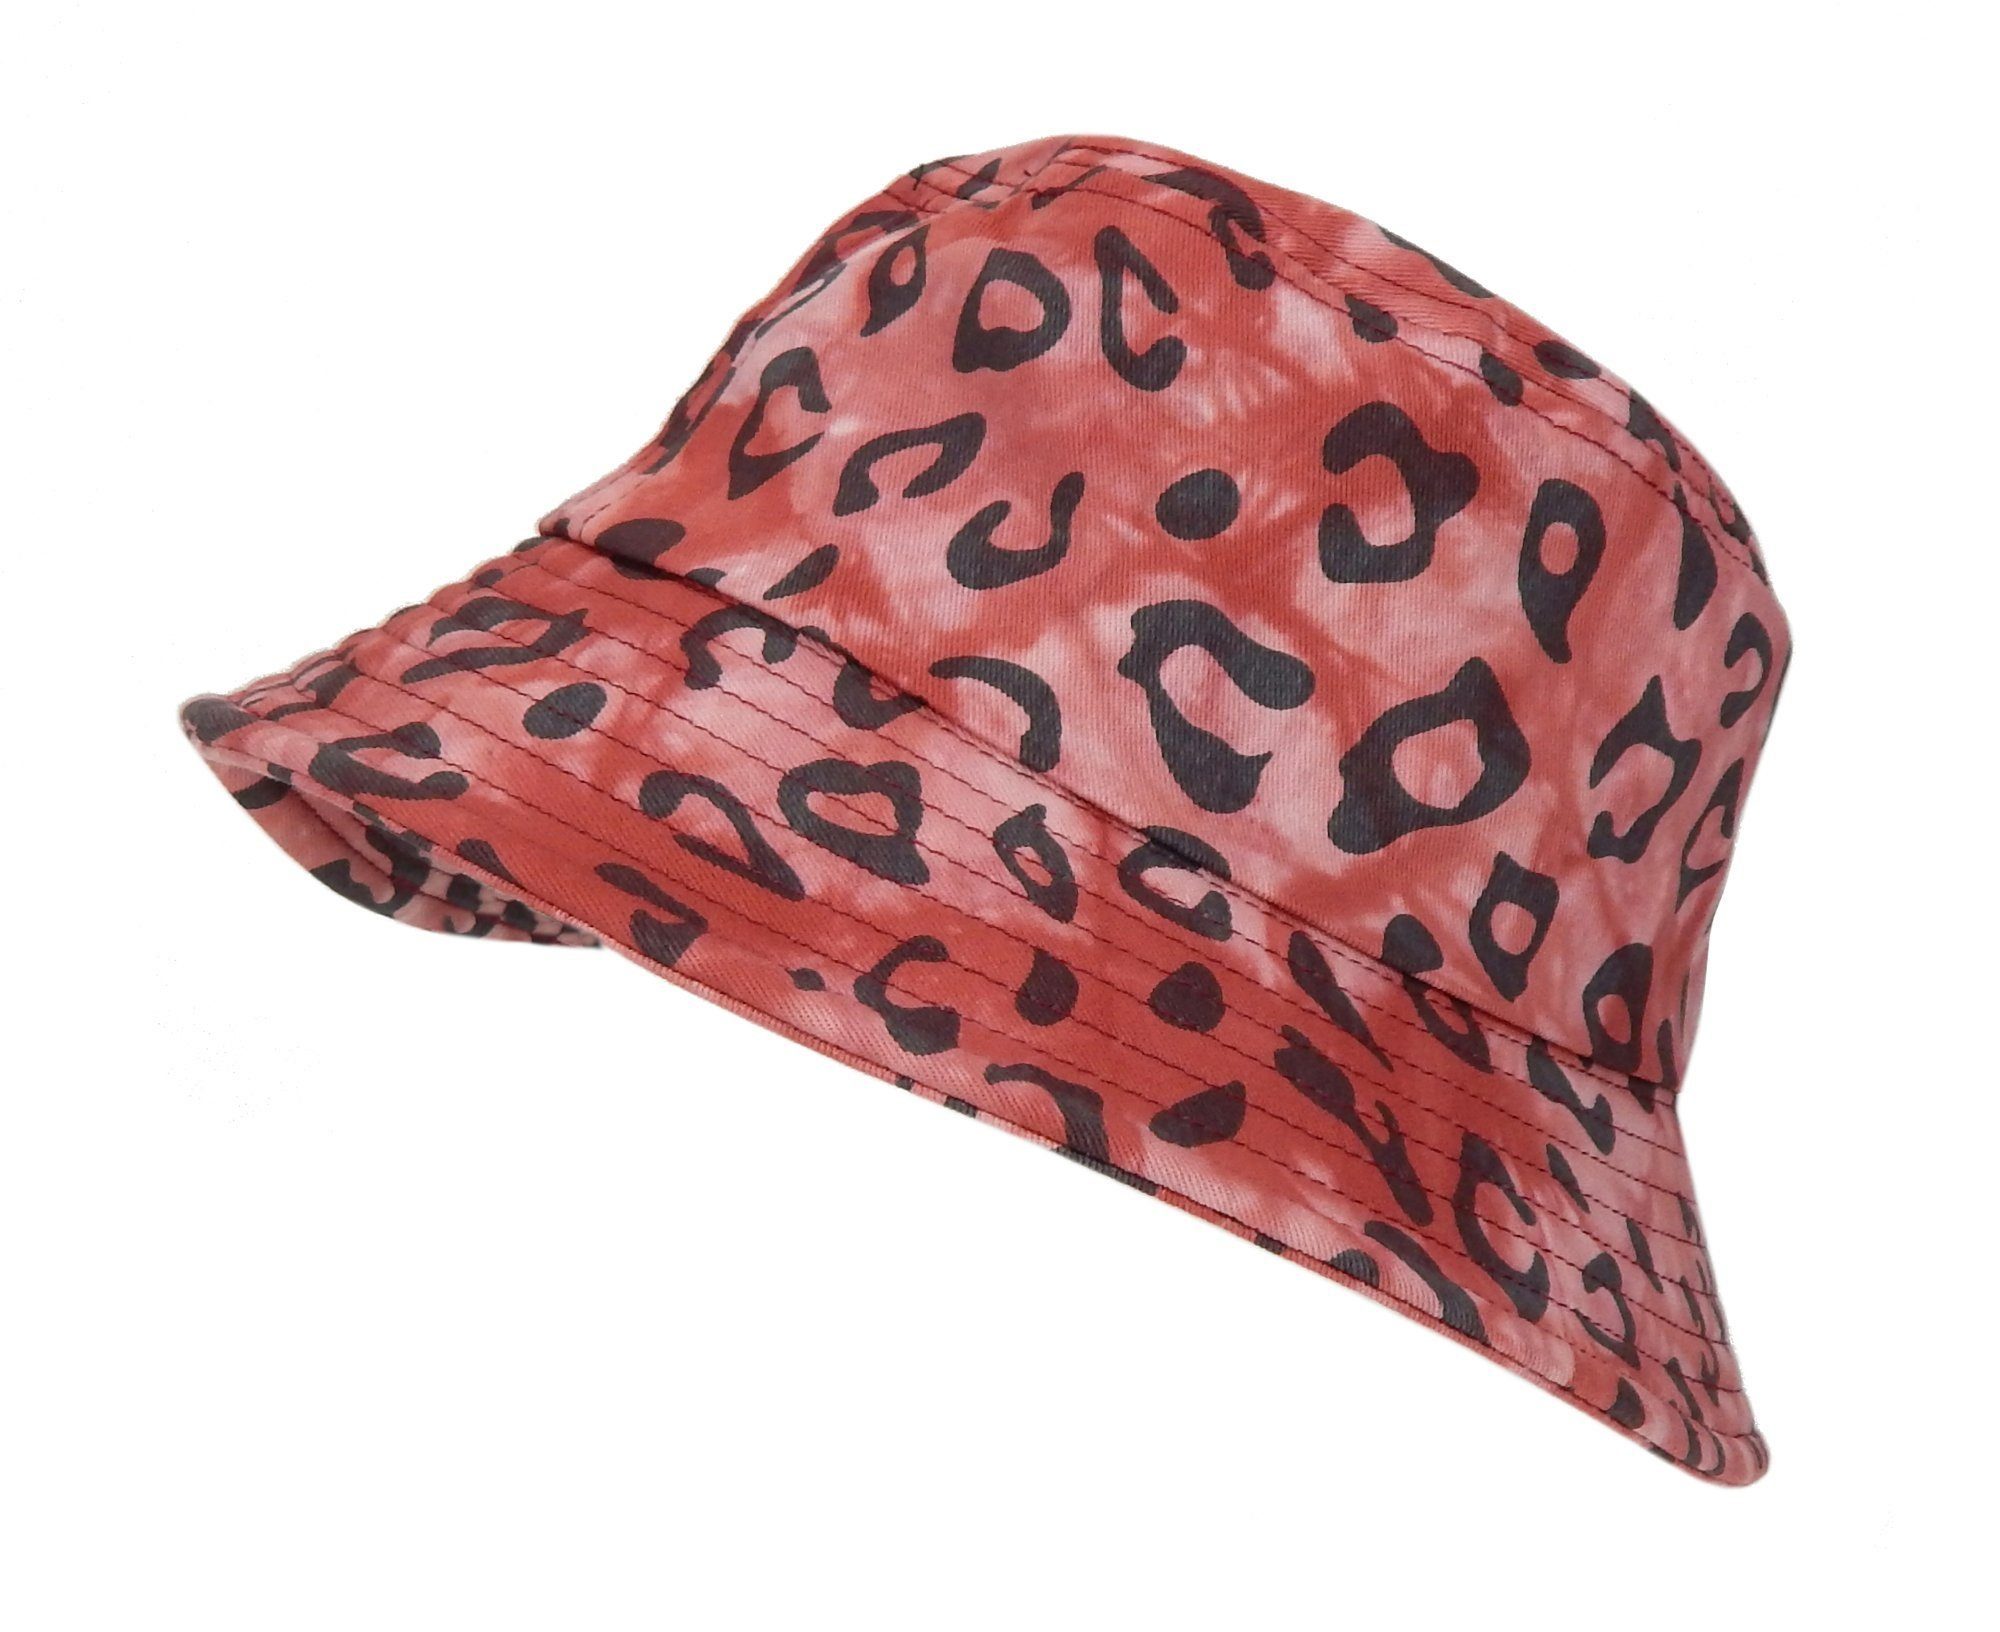 Ella Jonte Sonnenhut Bucket Hat rot schwarz Leopard Camouflage 54 - 56